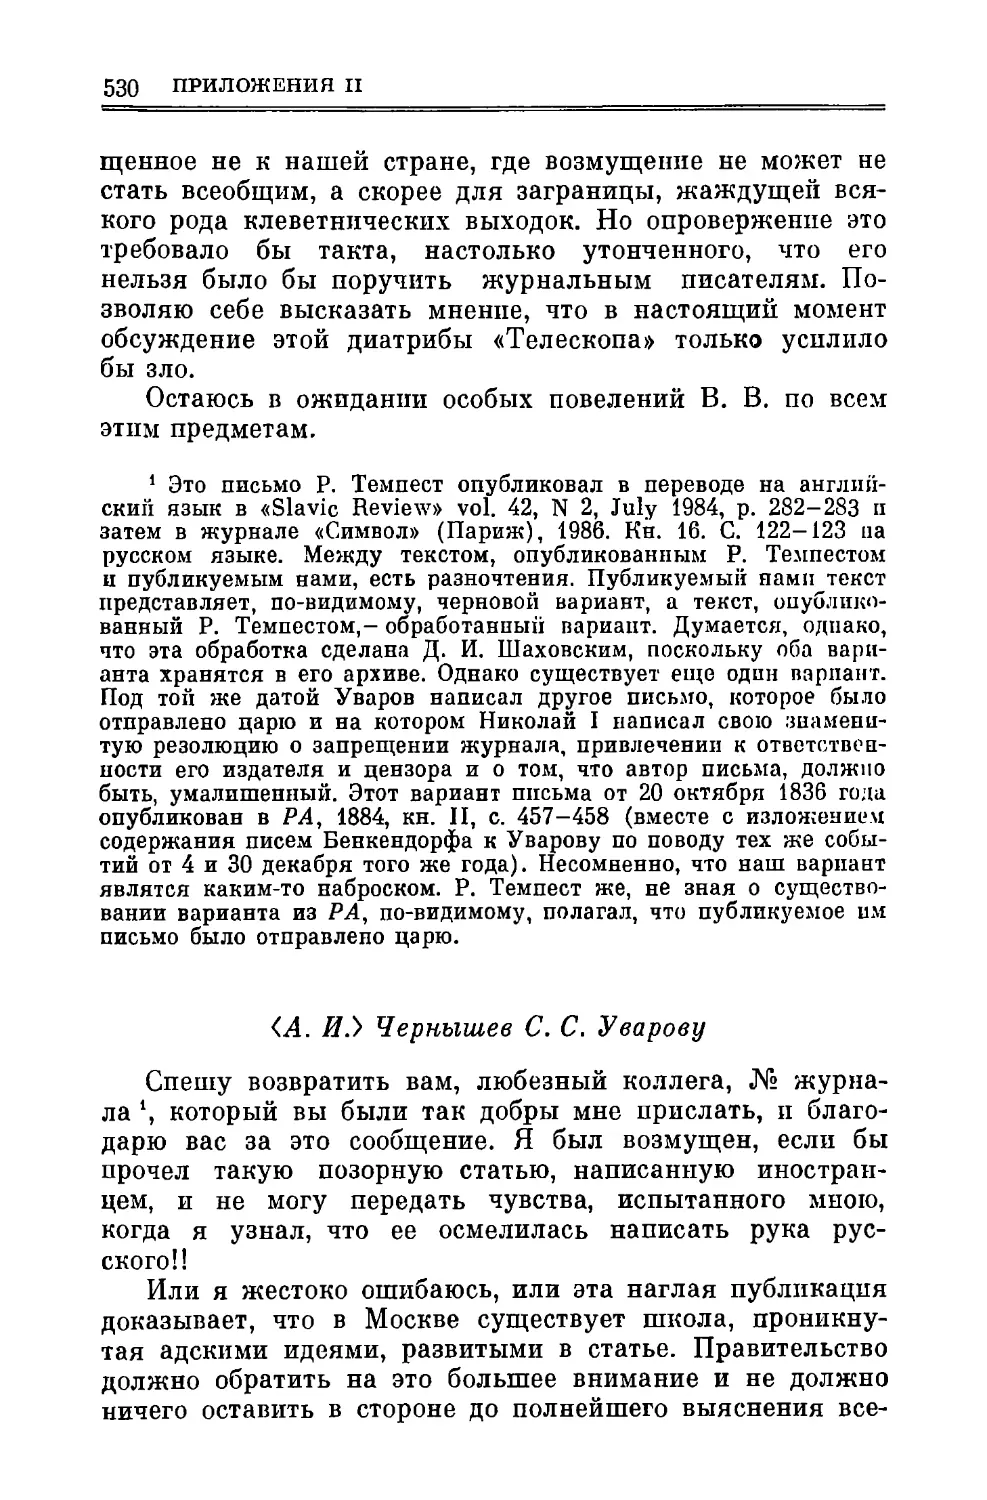 А.И. Чернышев С.С. Уварову 24.Х.1836